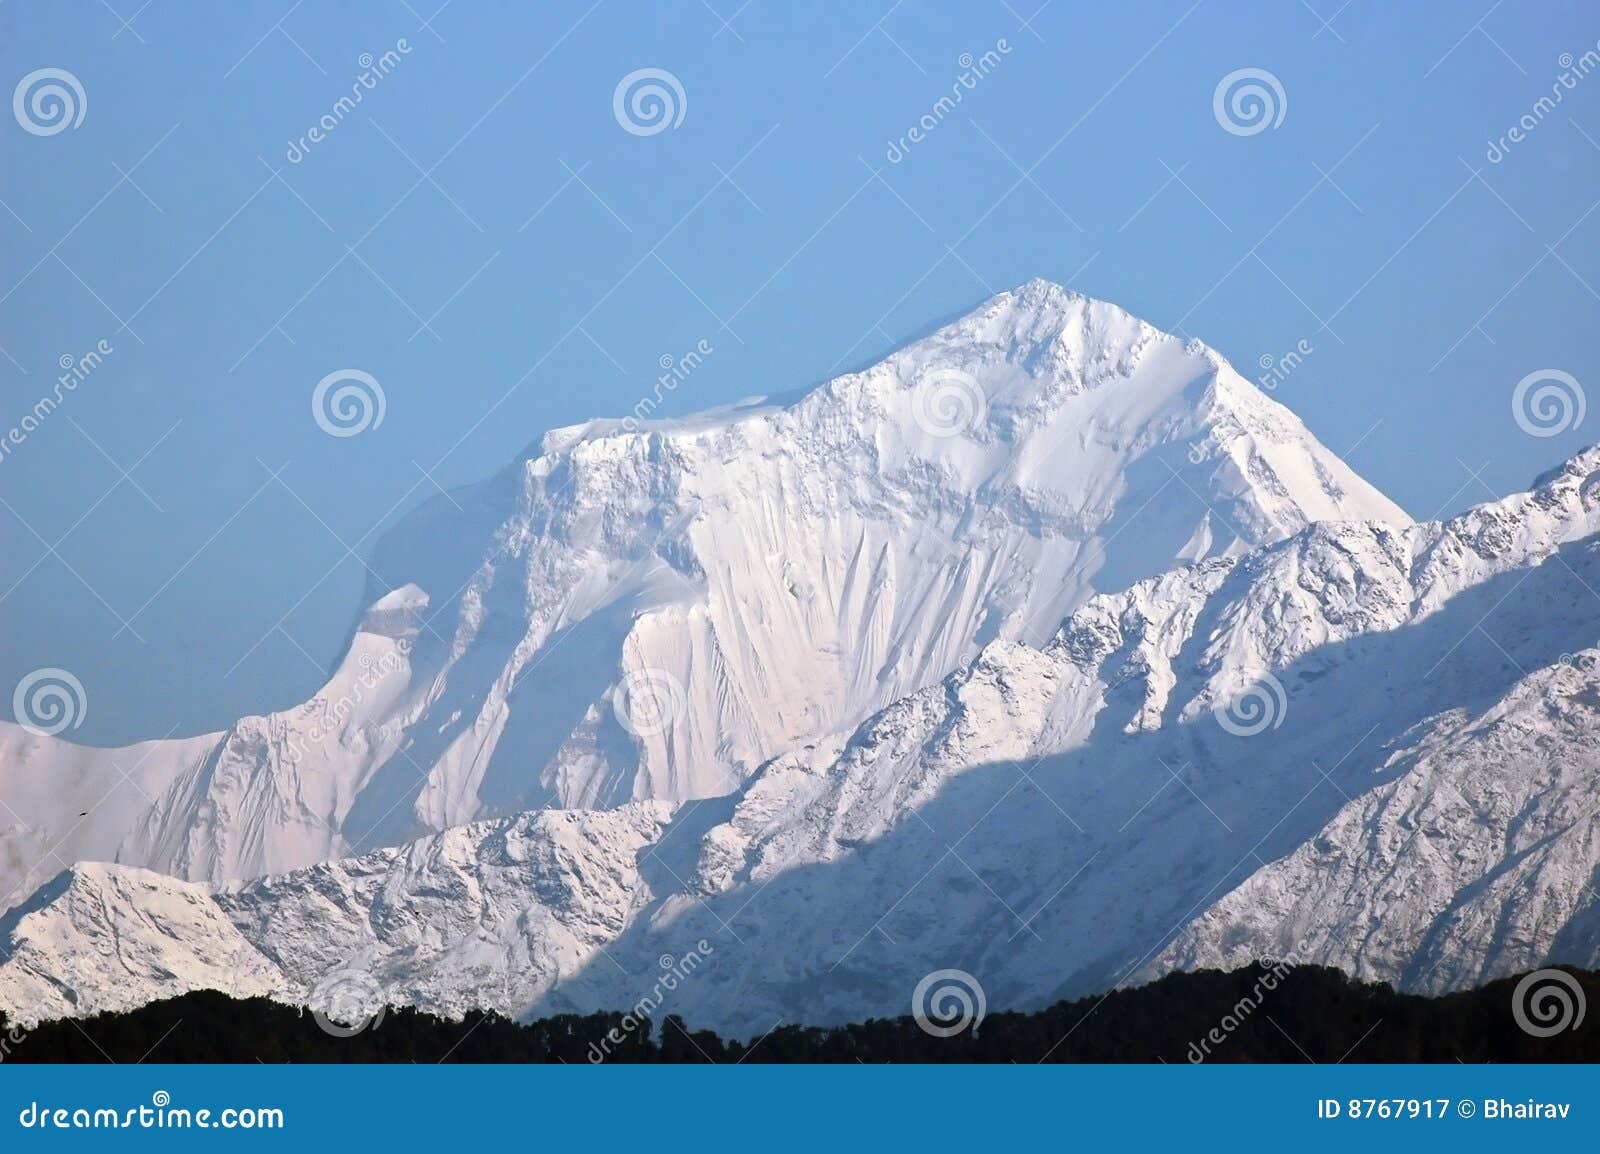 dhaulagiri - majestic mountain in himalaya.